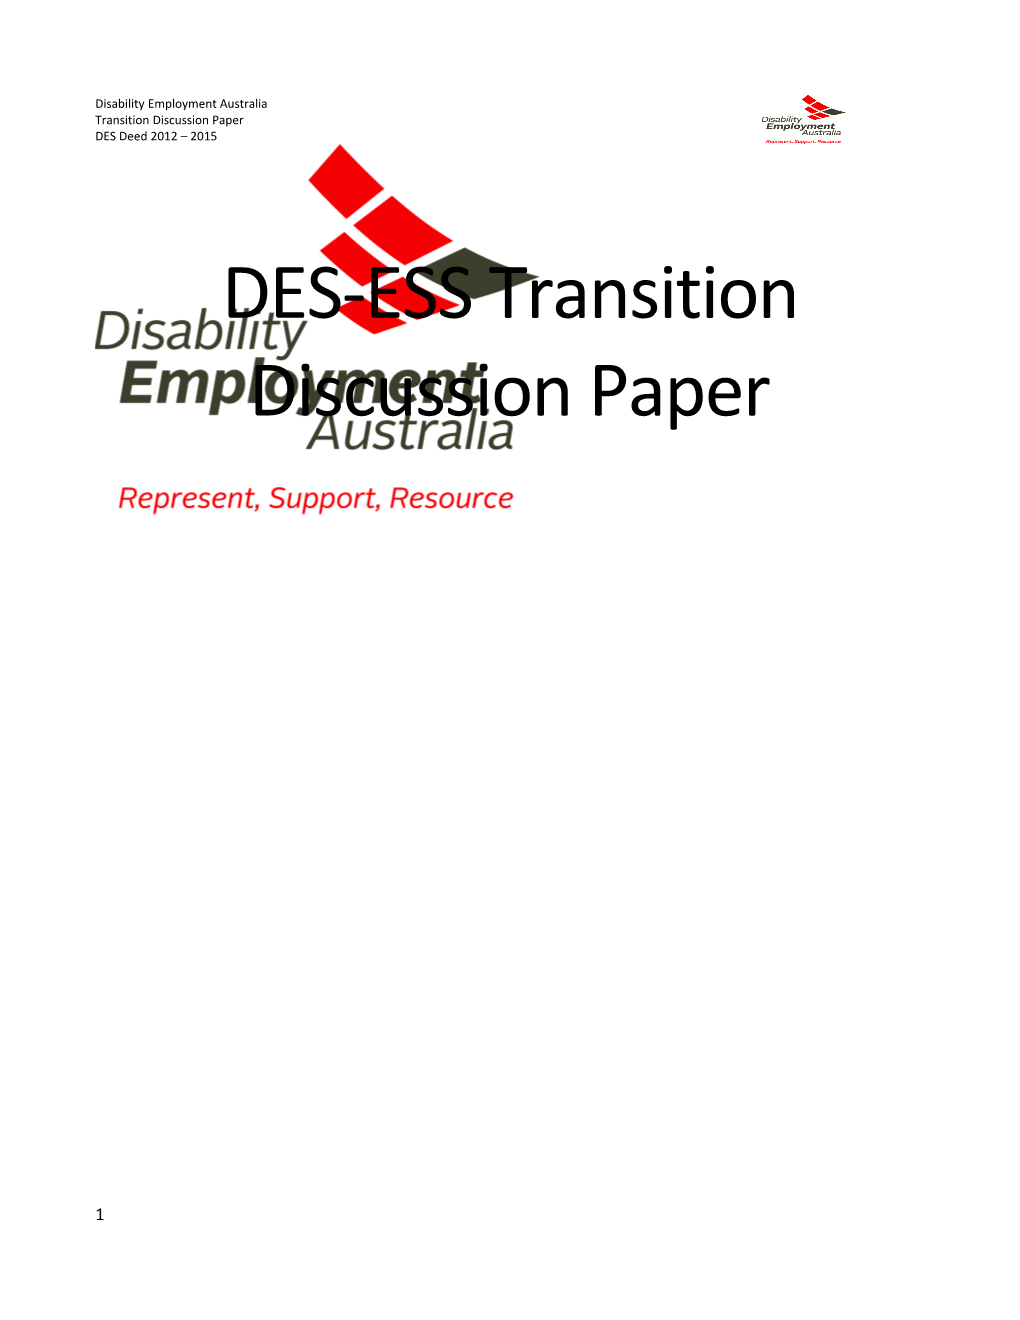 DES-ESS Transition Discussion Paper